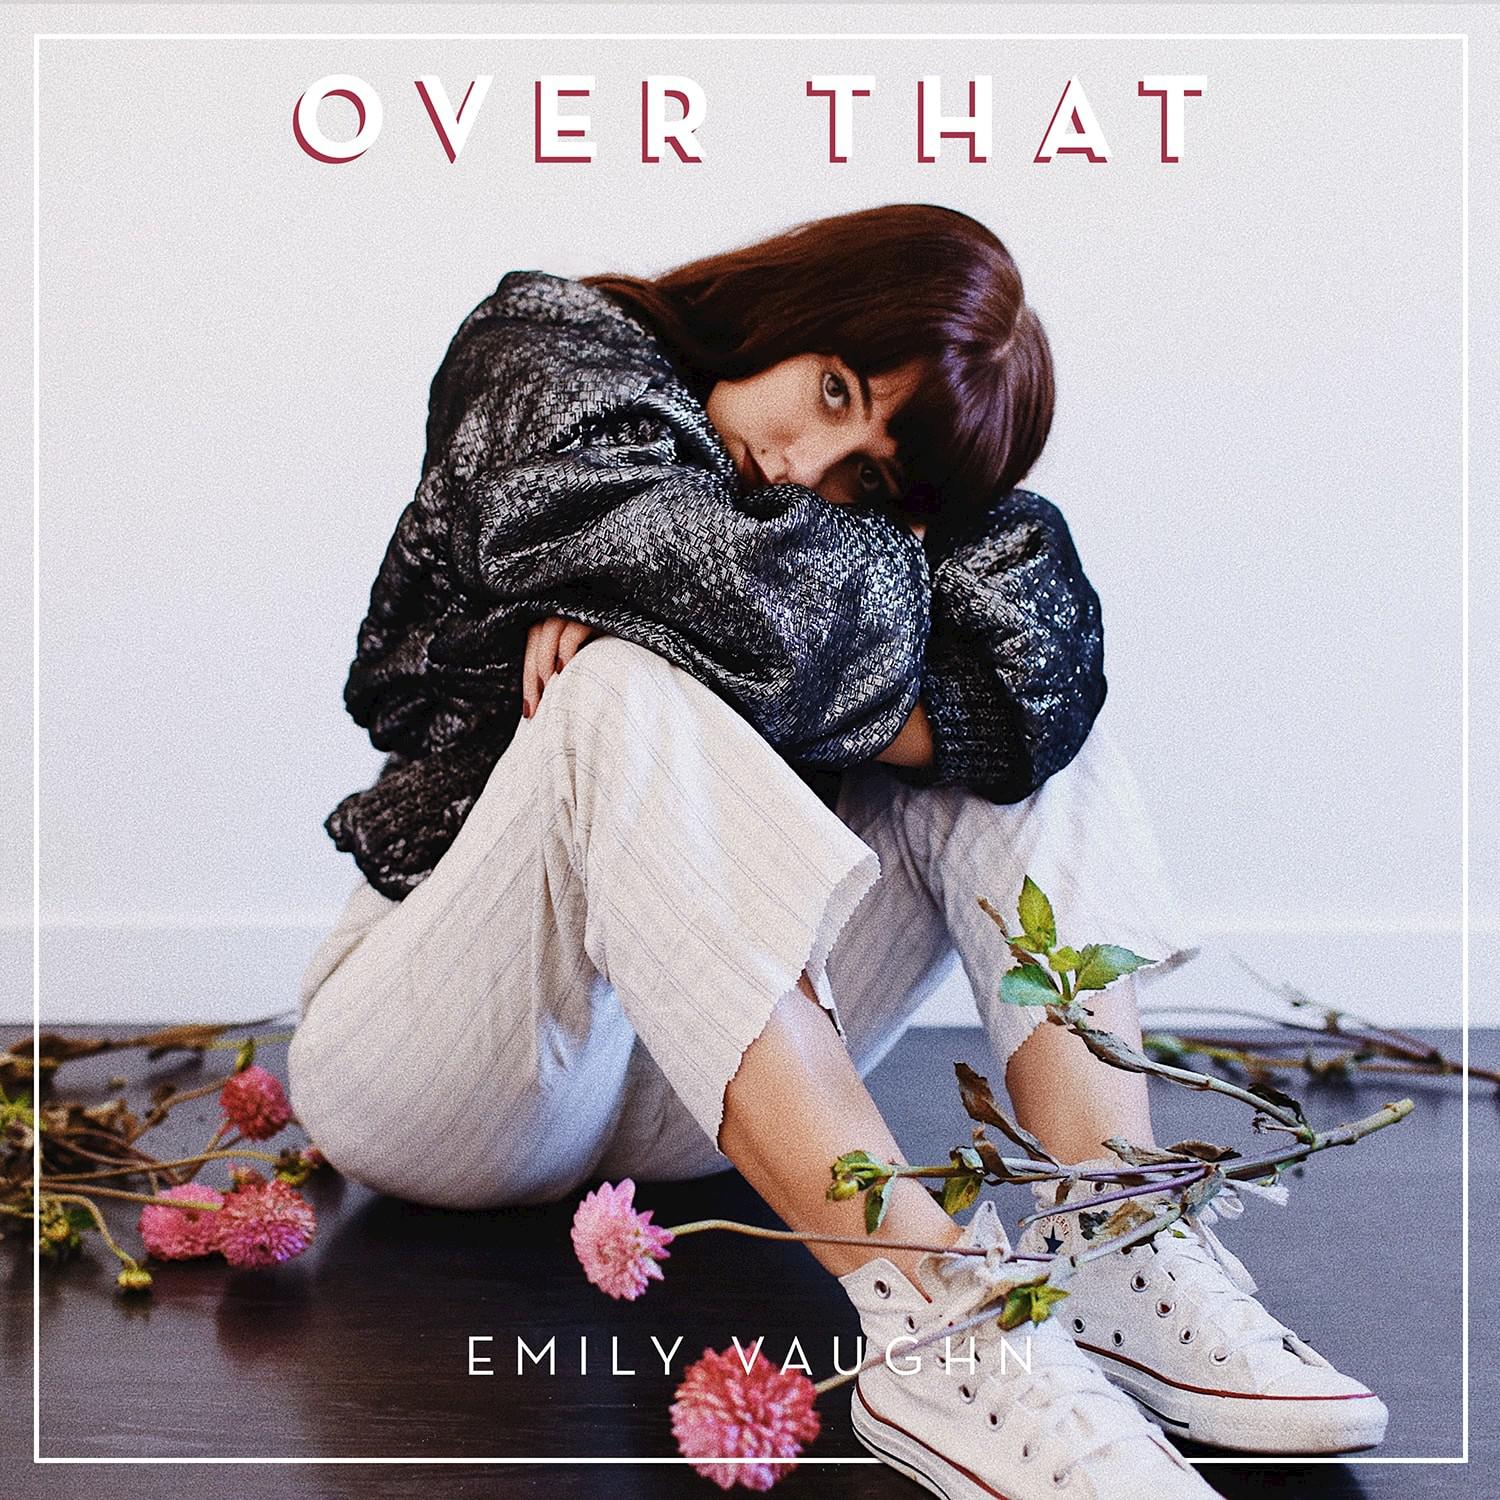 Over That歌词 歌手Emily Vaughn-专辑Over That-单曲《Over That》LRC歌词下载